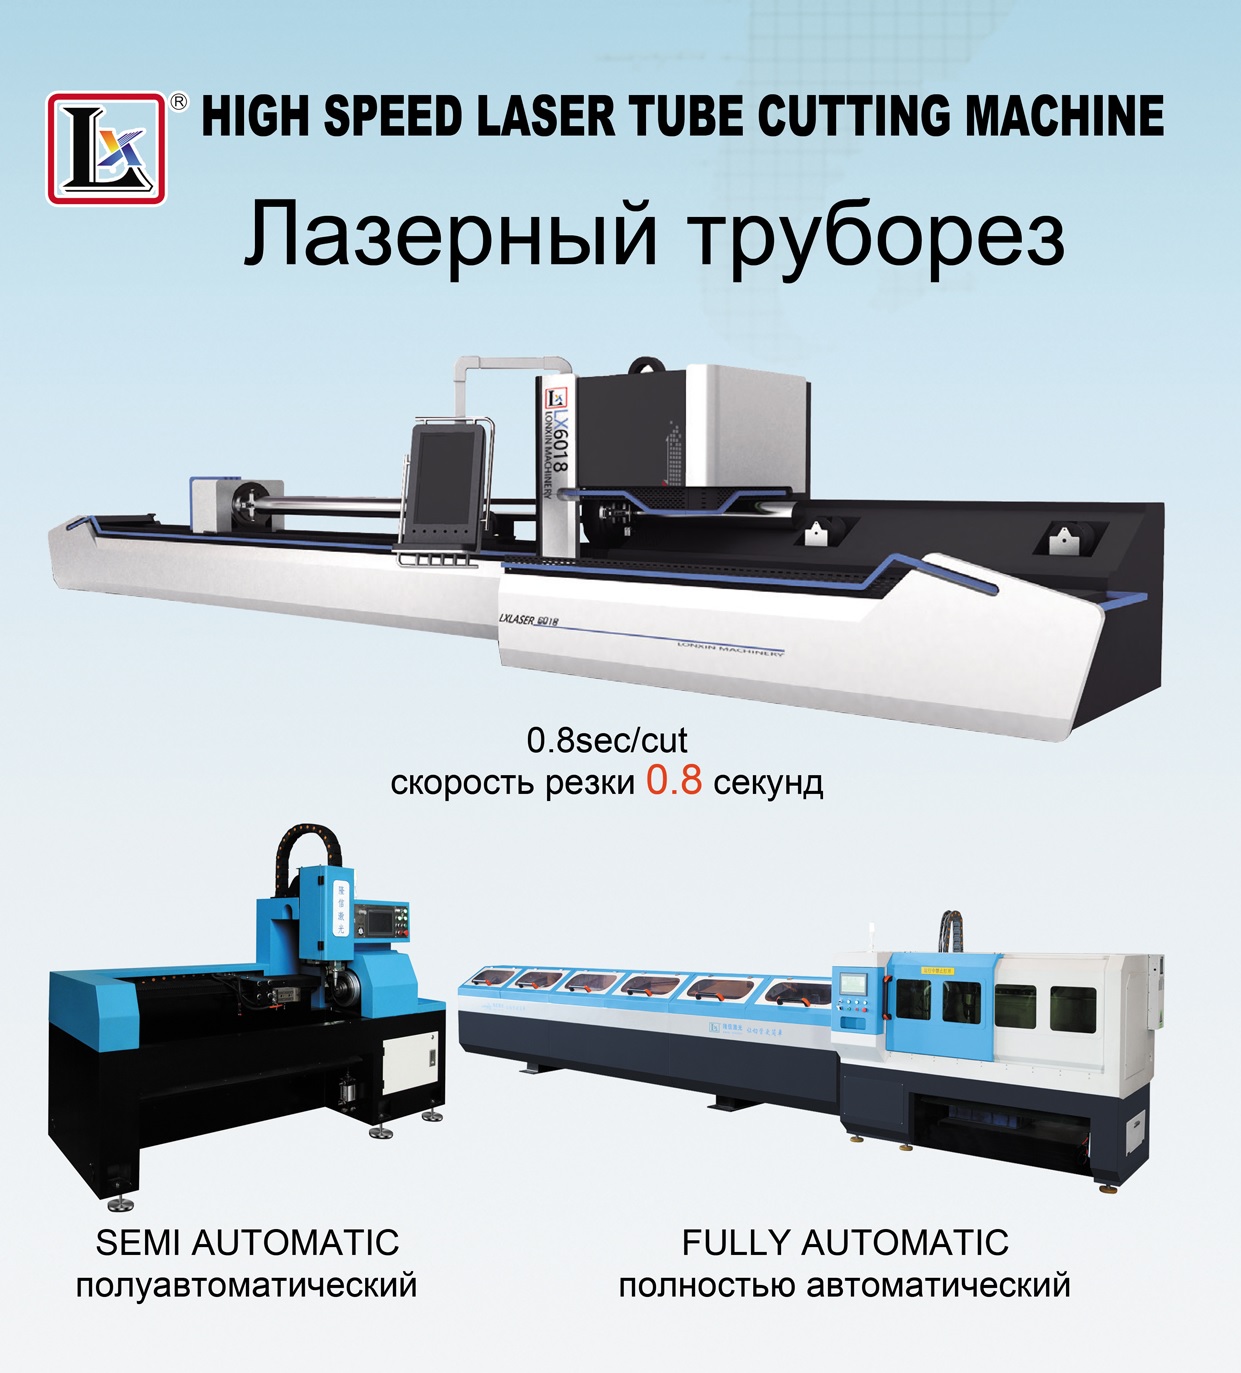 LX Lazer Tüp & Boru Kesme Makinasının Farkları